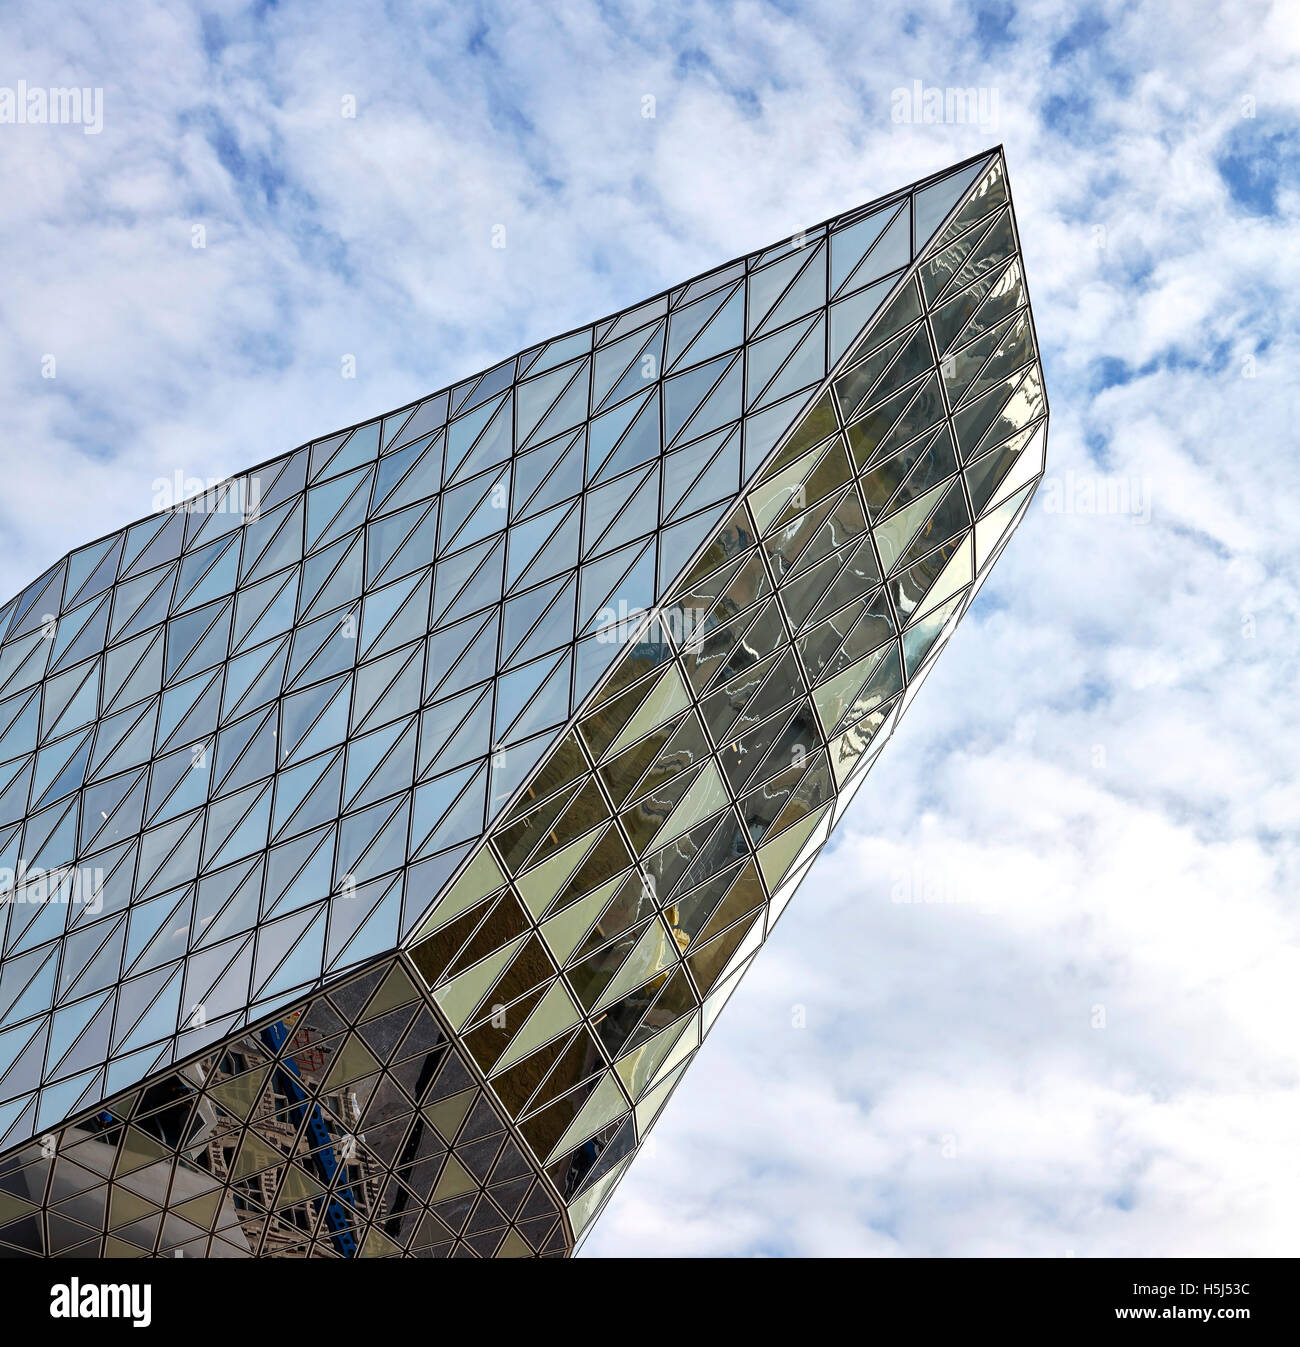 Détail de l'opaque et facettes en verre transparent. Maison du port, Anvers, Belgique. Architecte : Zaha Hadid Architects, 2016. Banque D'Images